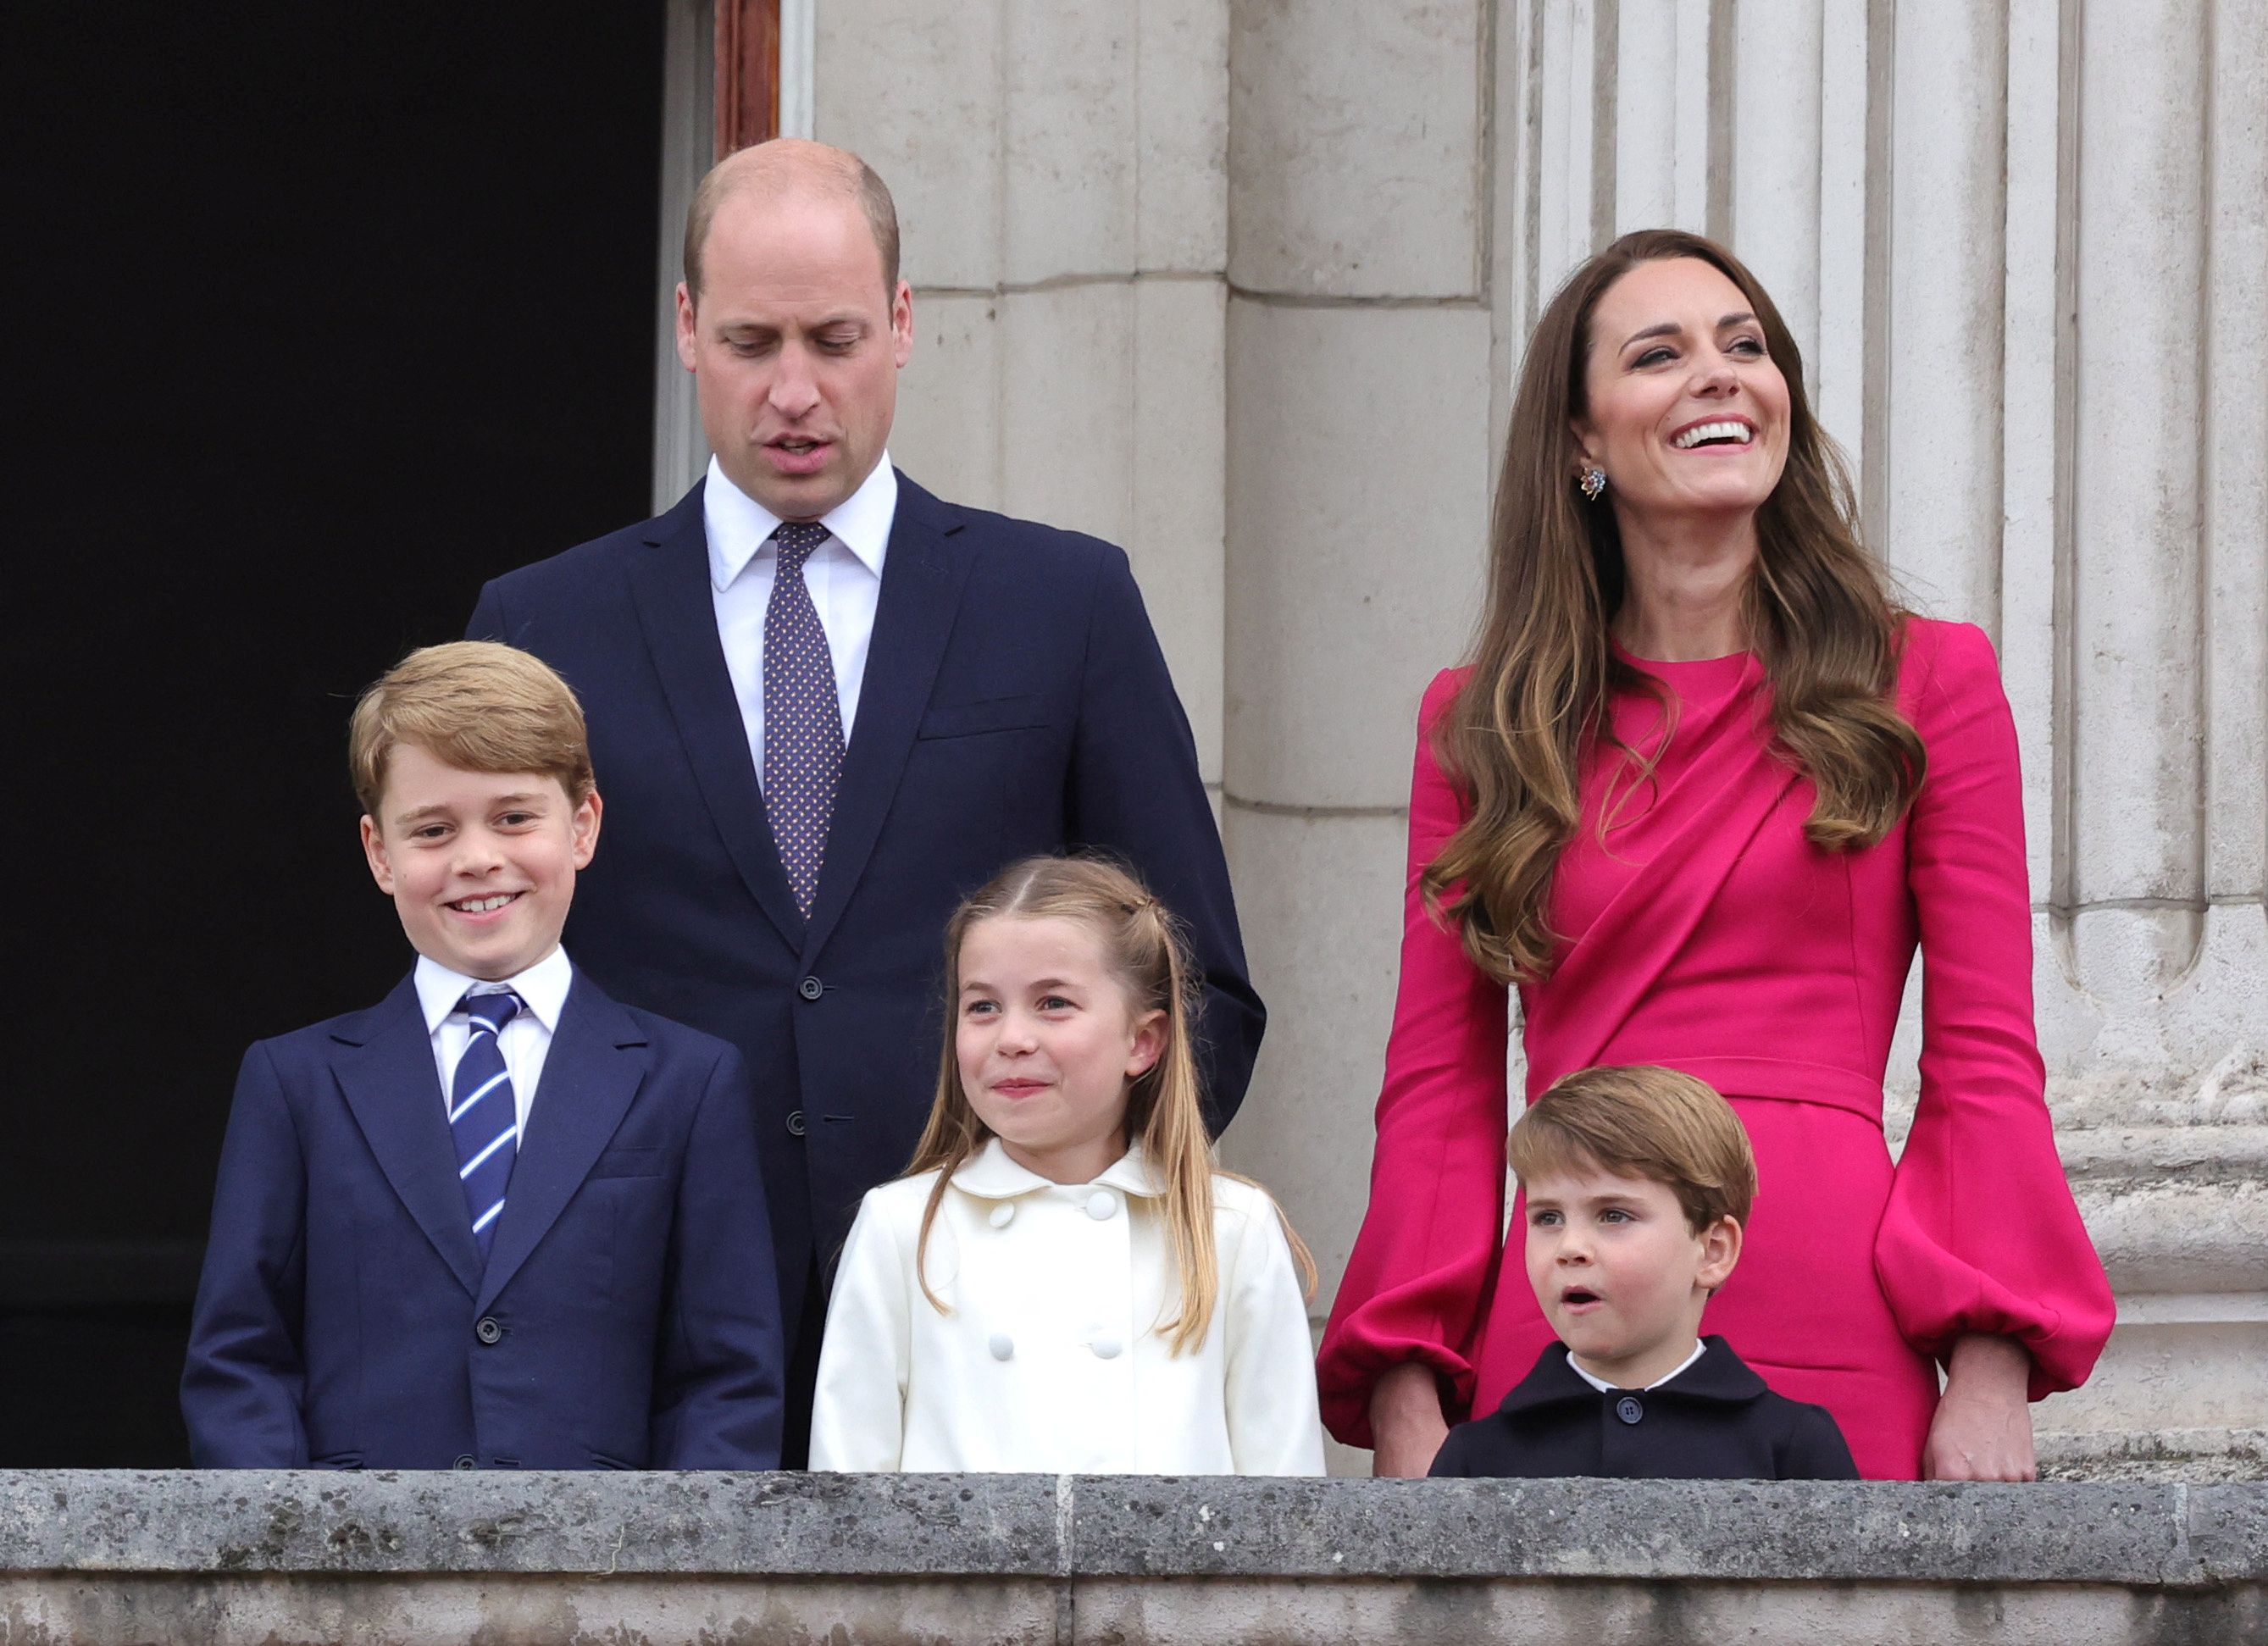 Za zadnji dan proslave platinastog jubileja, Kate Middleton odabrala je model efektnih detalja u boji fuksije